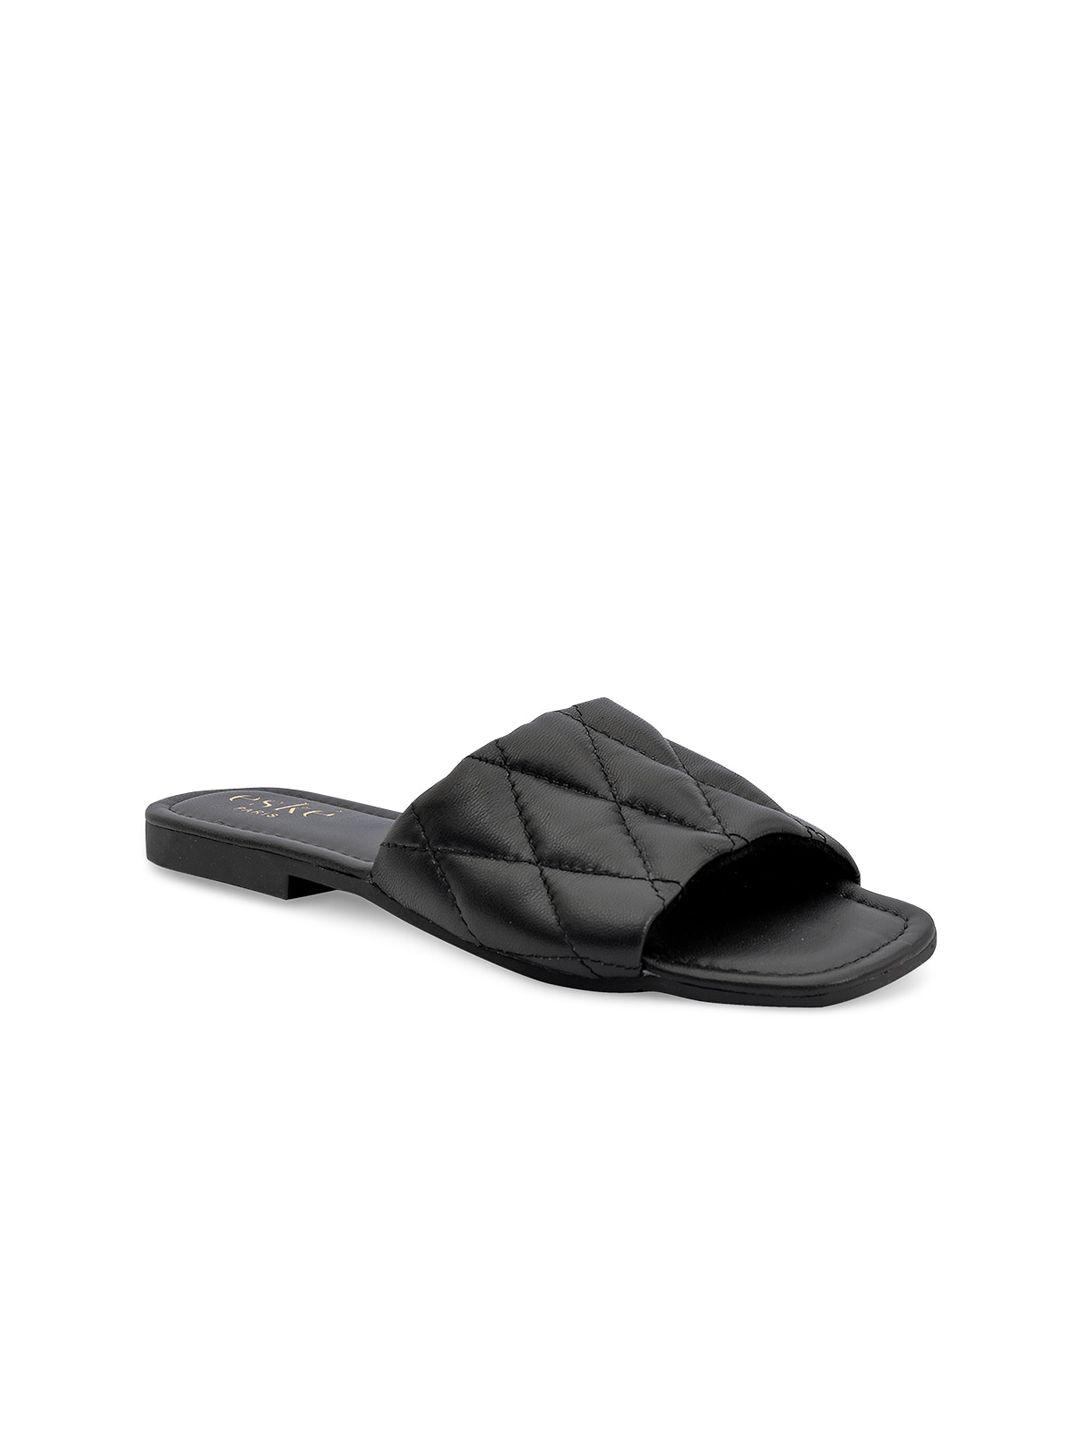 eske women textured leather open toe flats